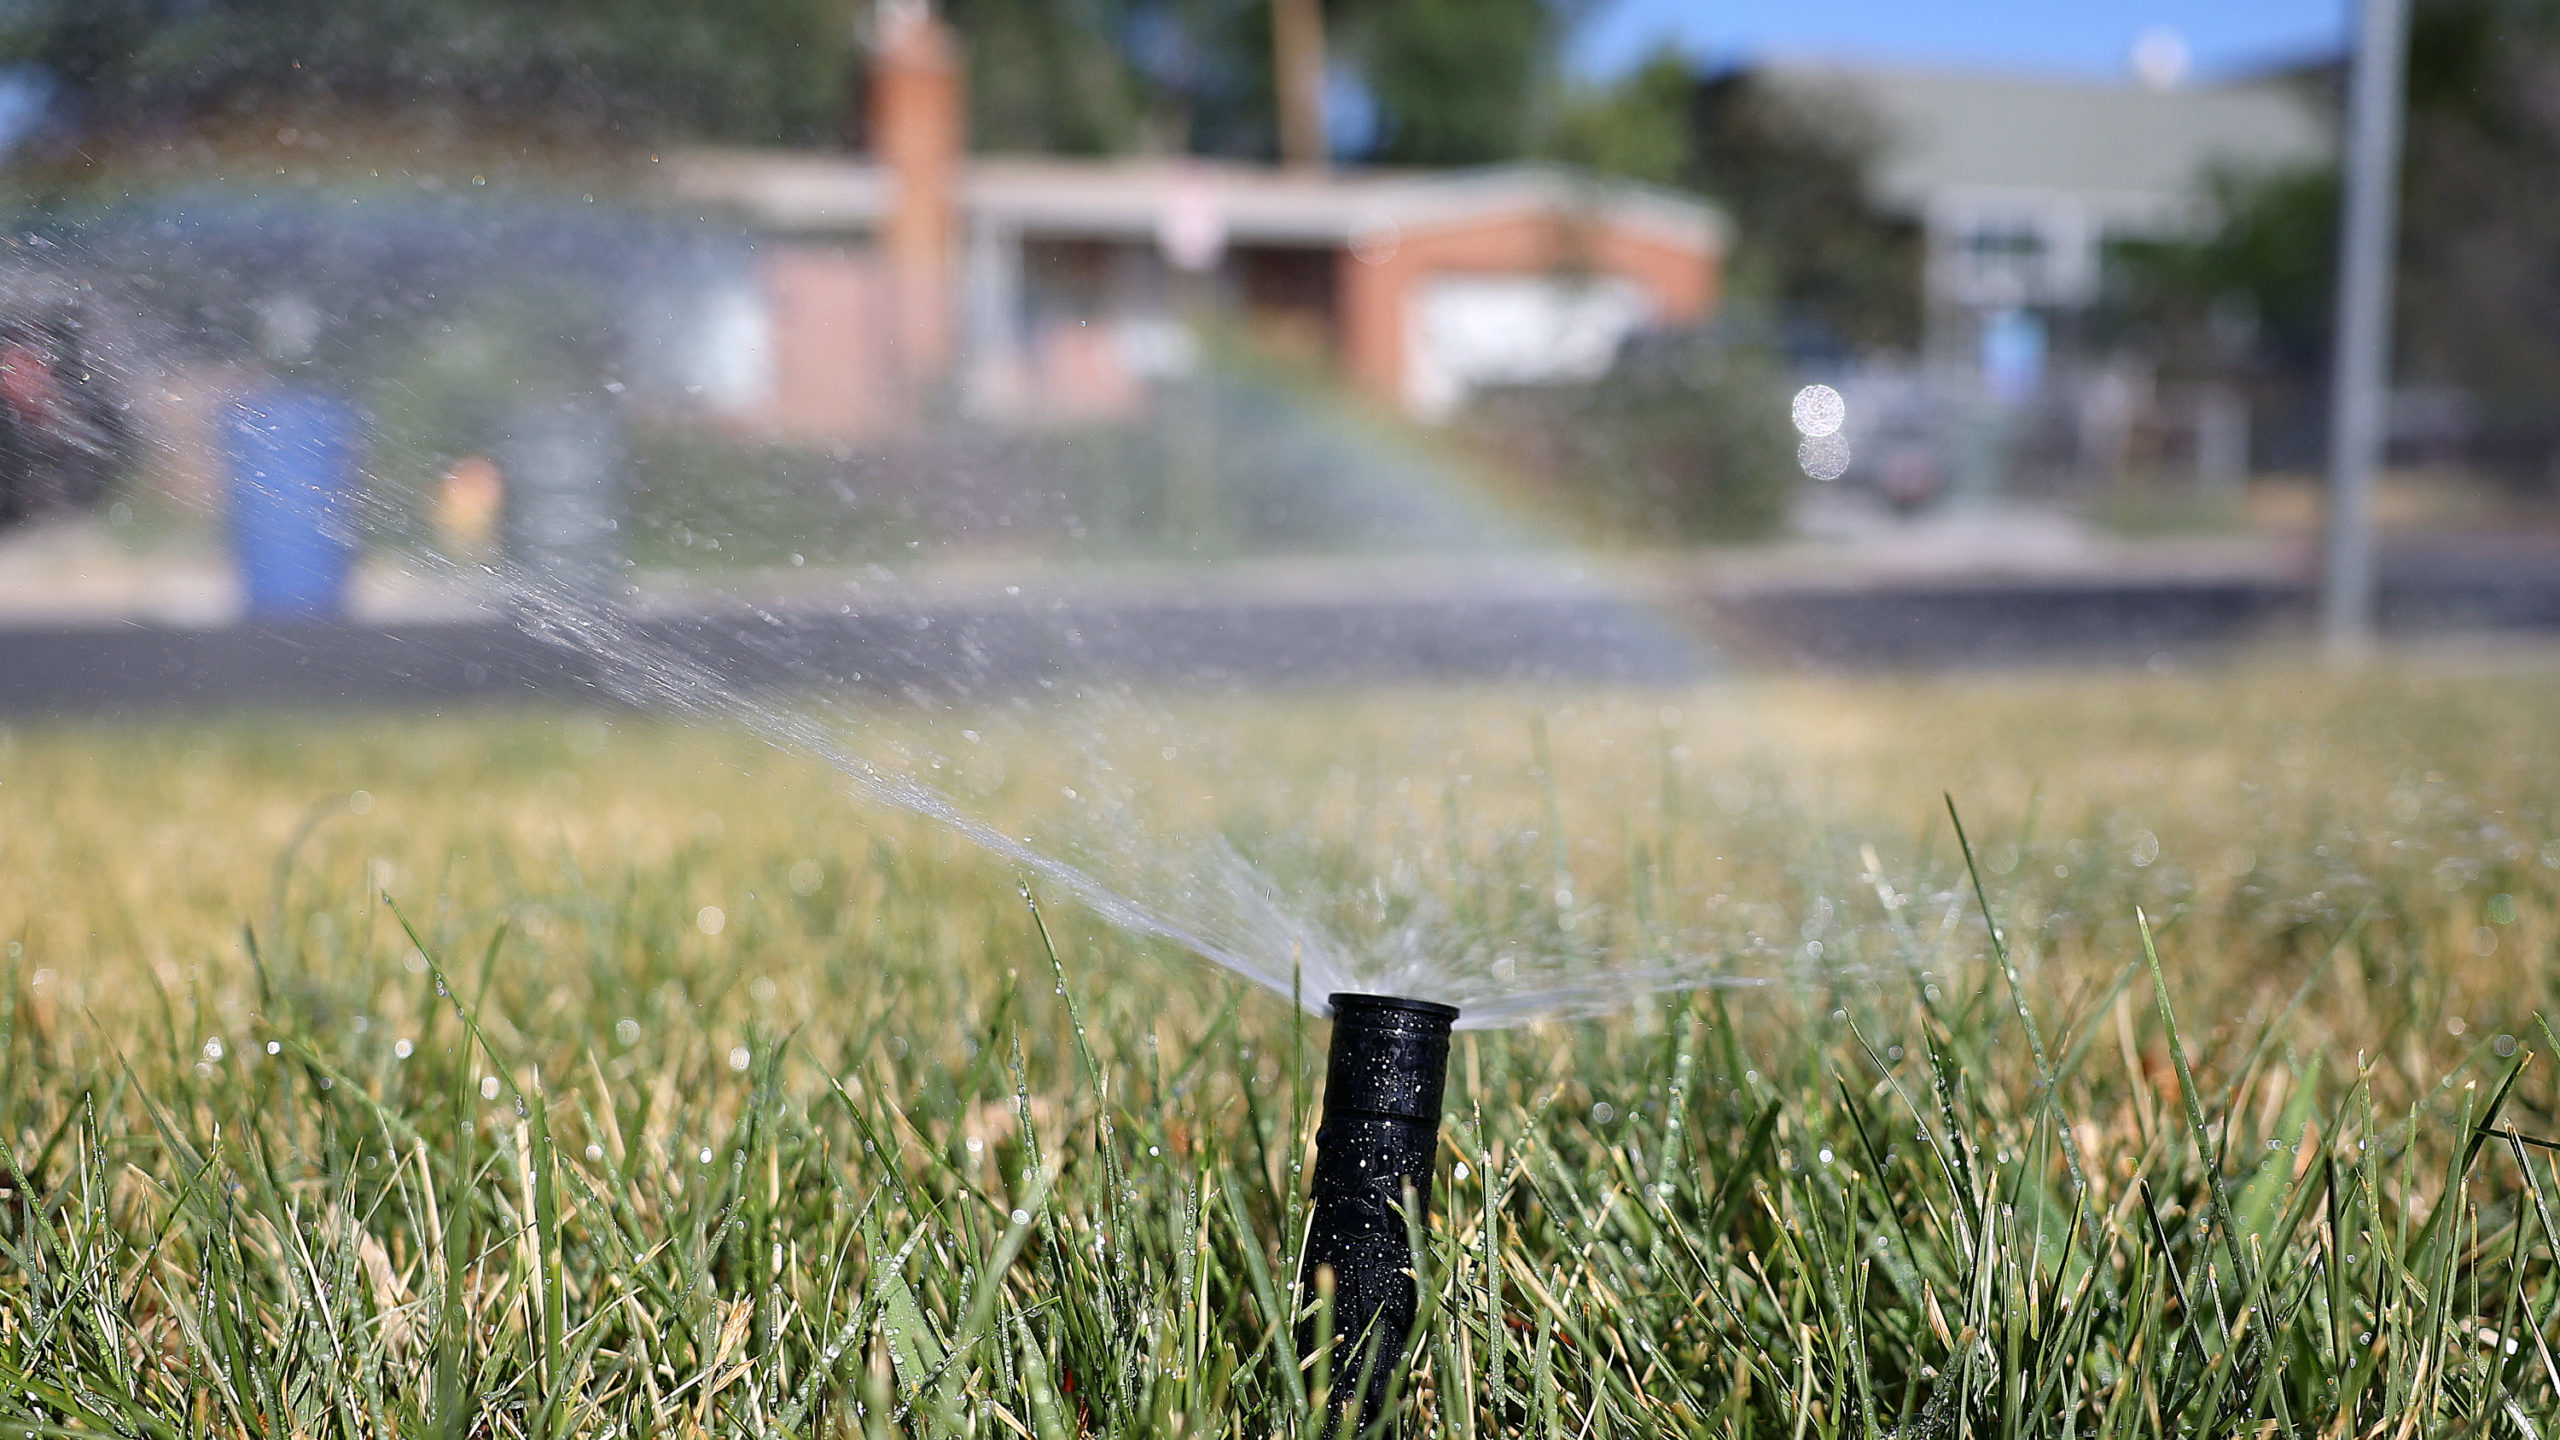 Sprinkler is shown watering lawn...